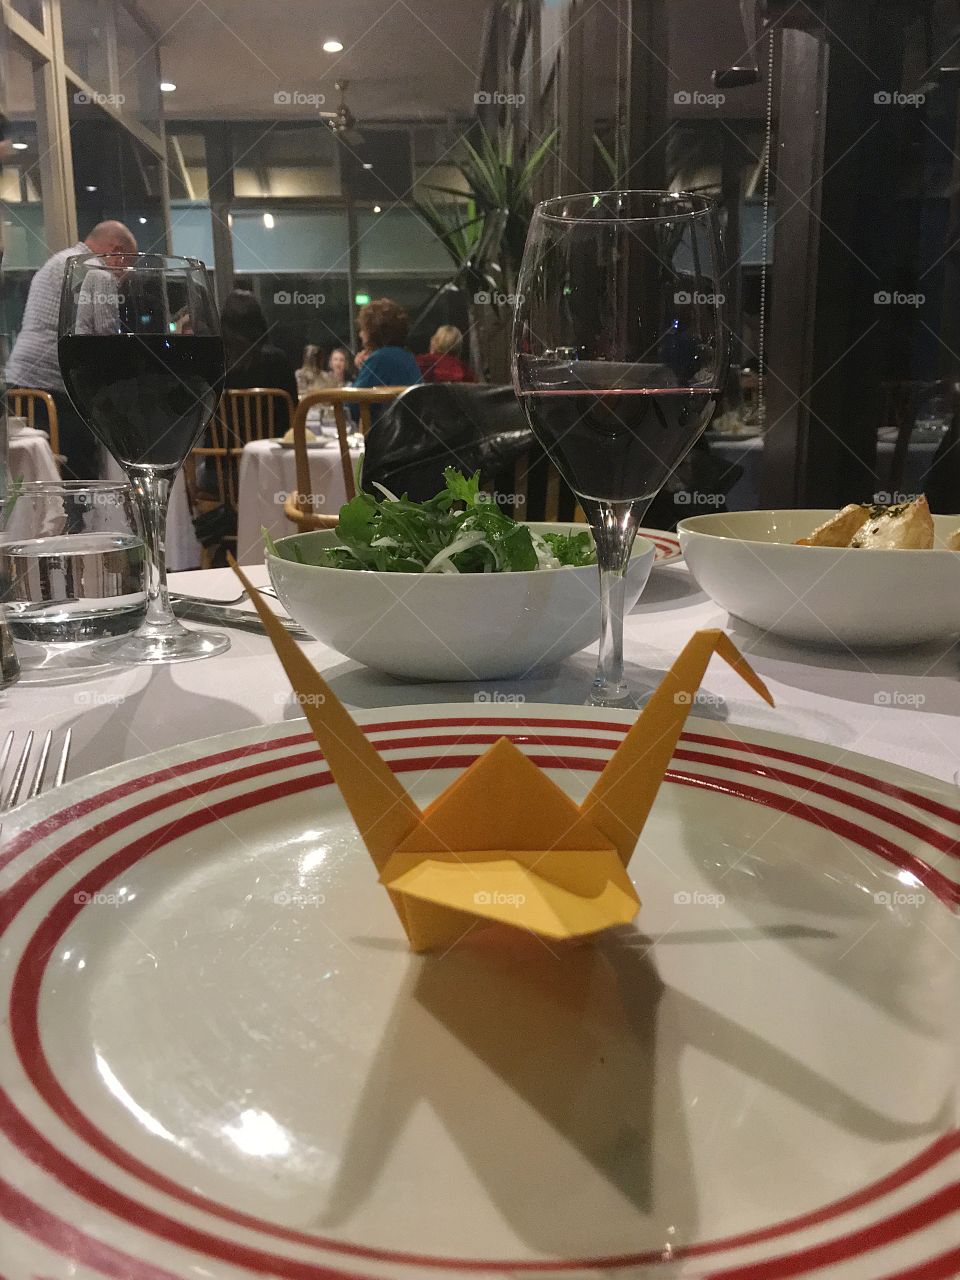 Origami crane, Japanese dinner place setting in restaurant 